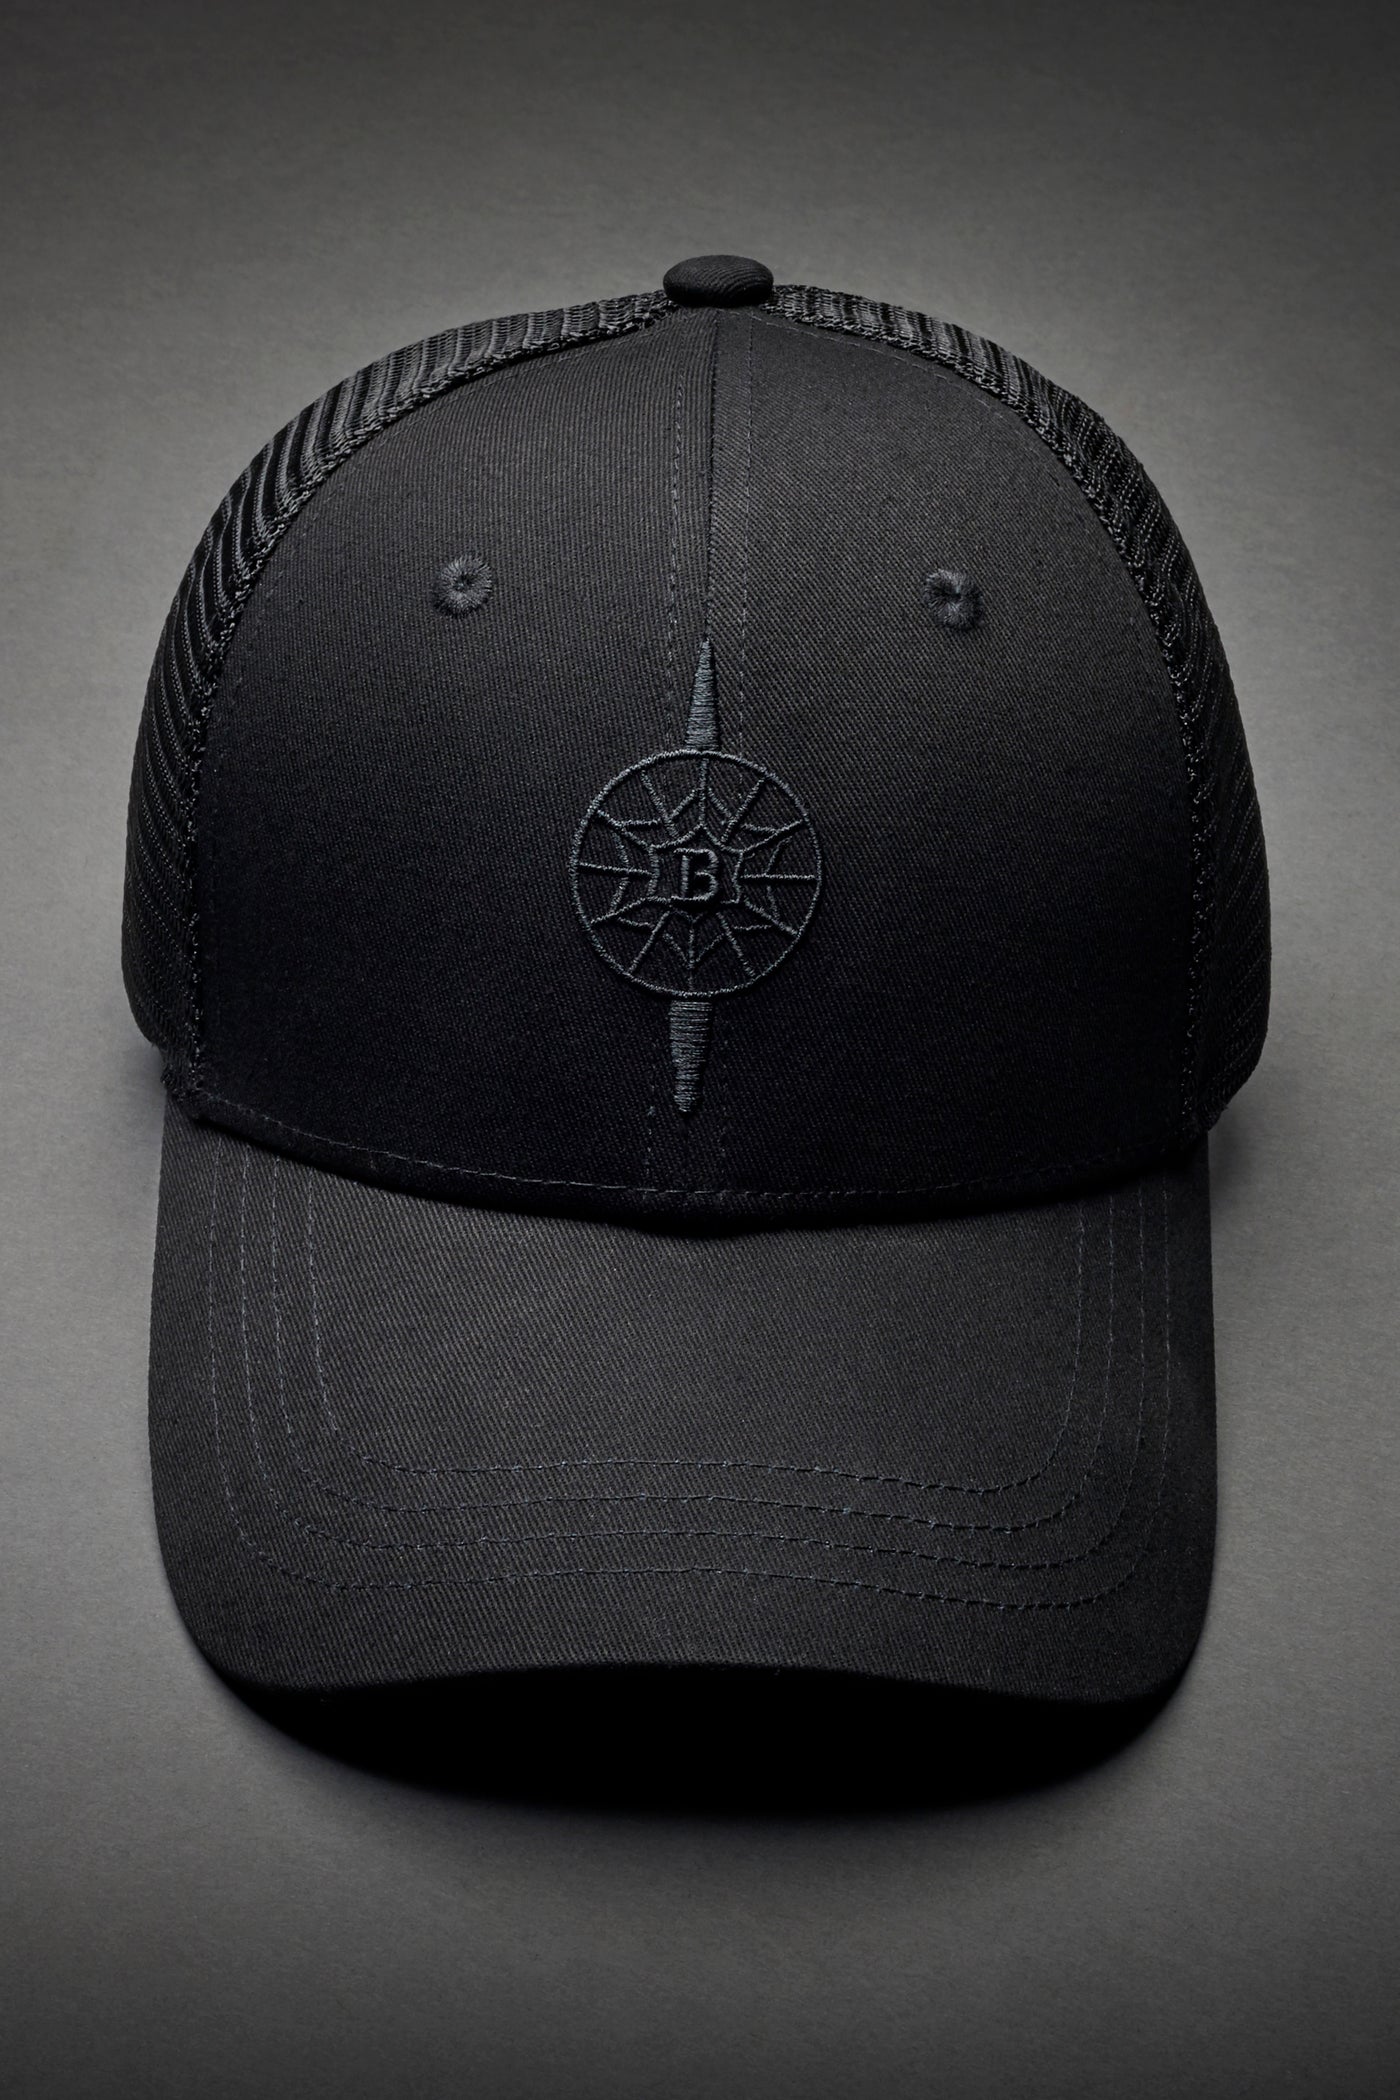 BLACK OPS CAP.